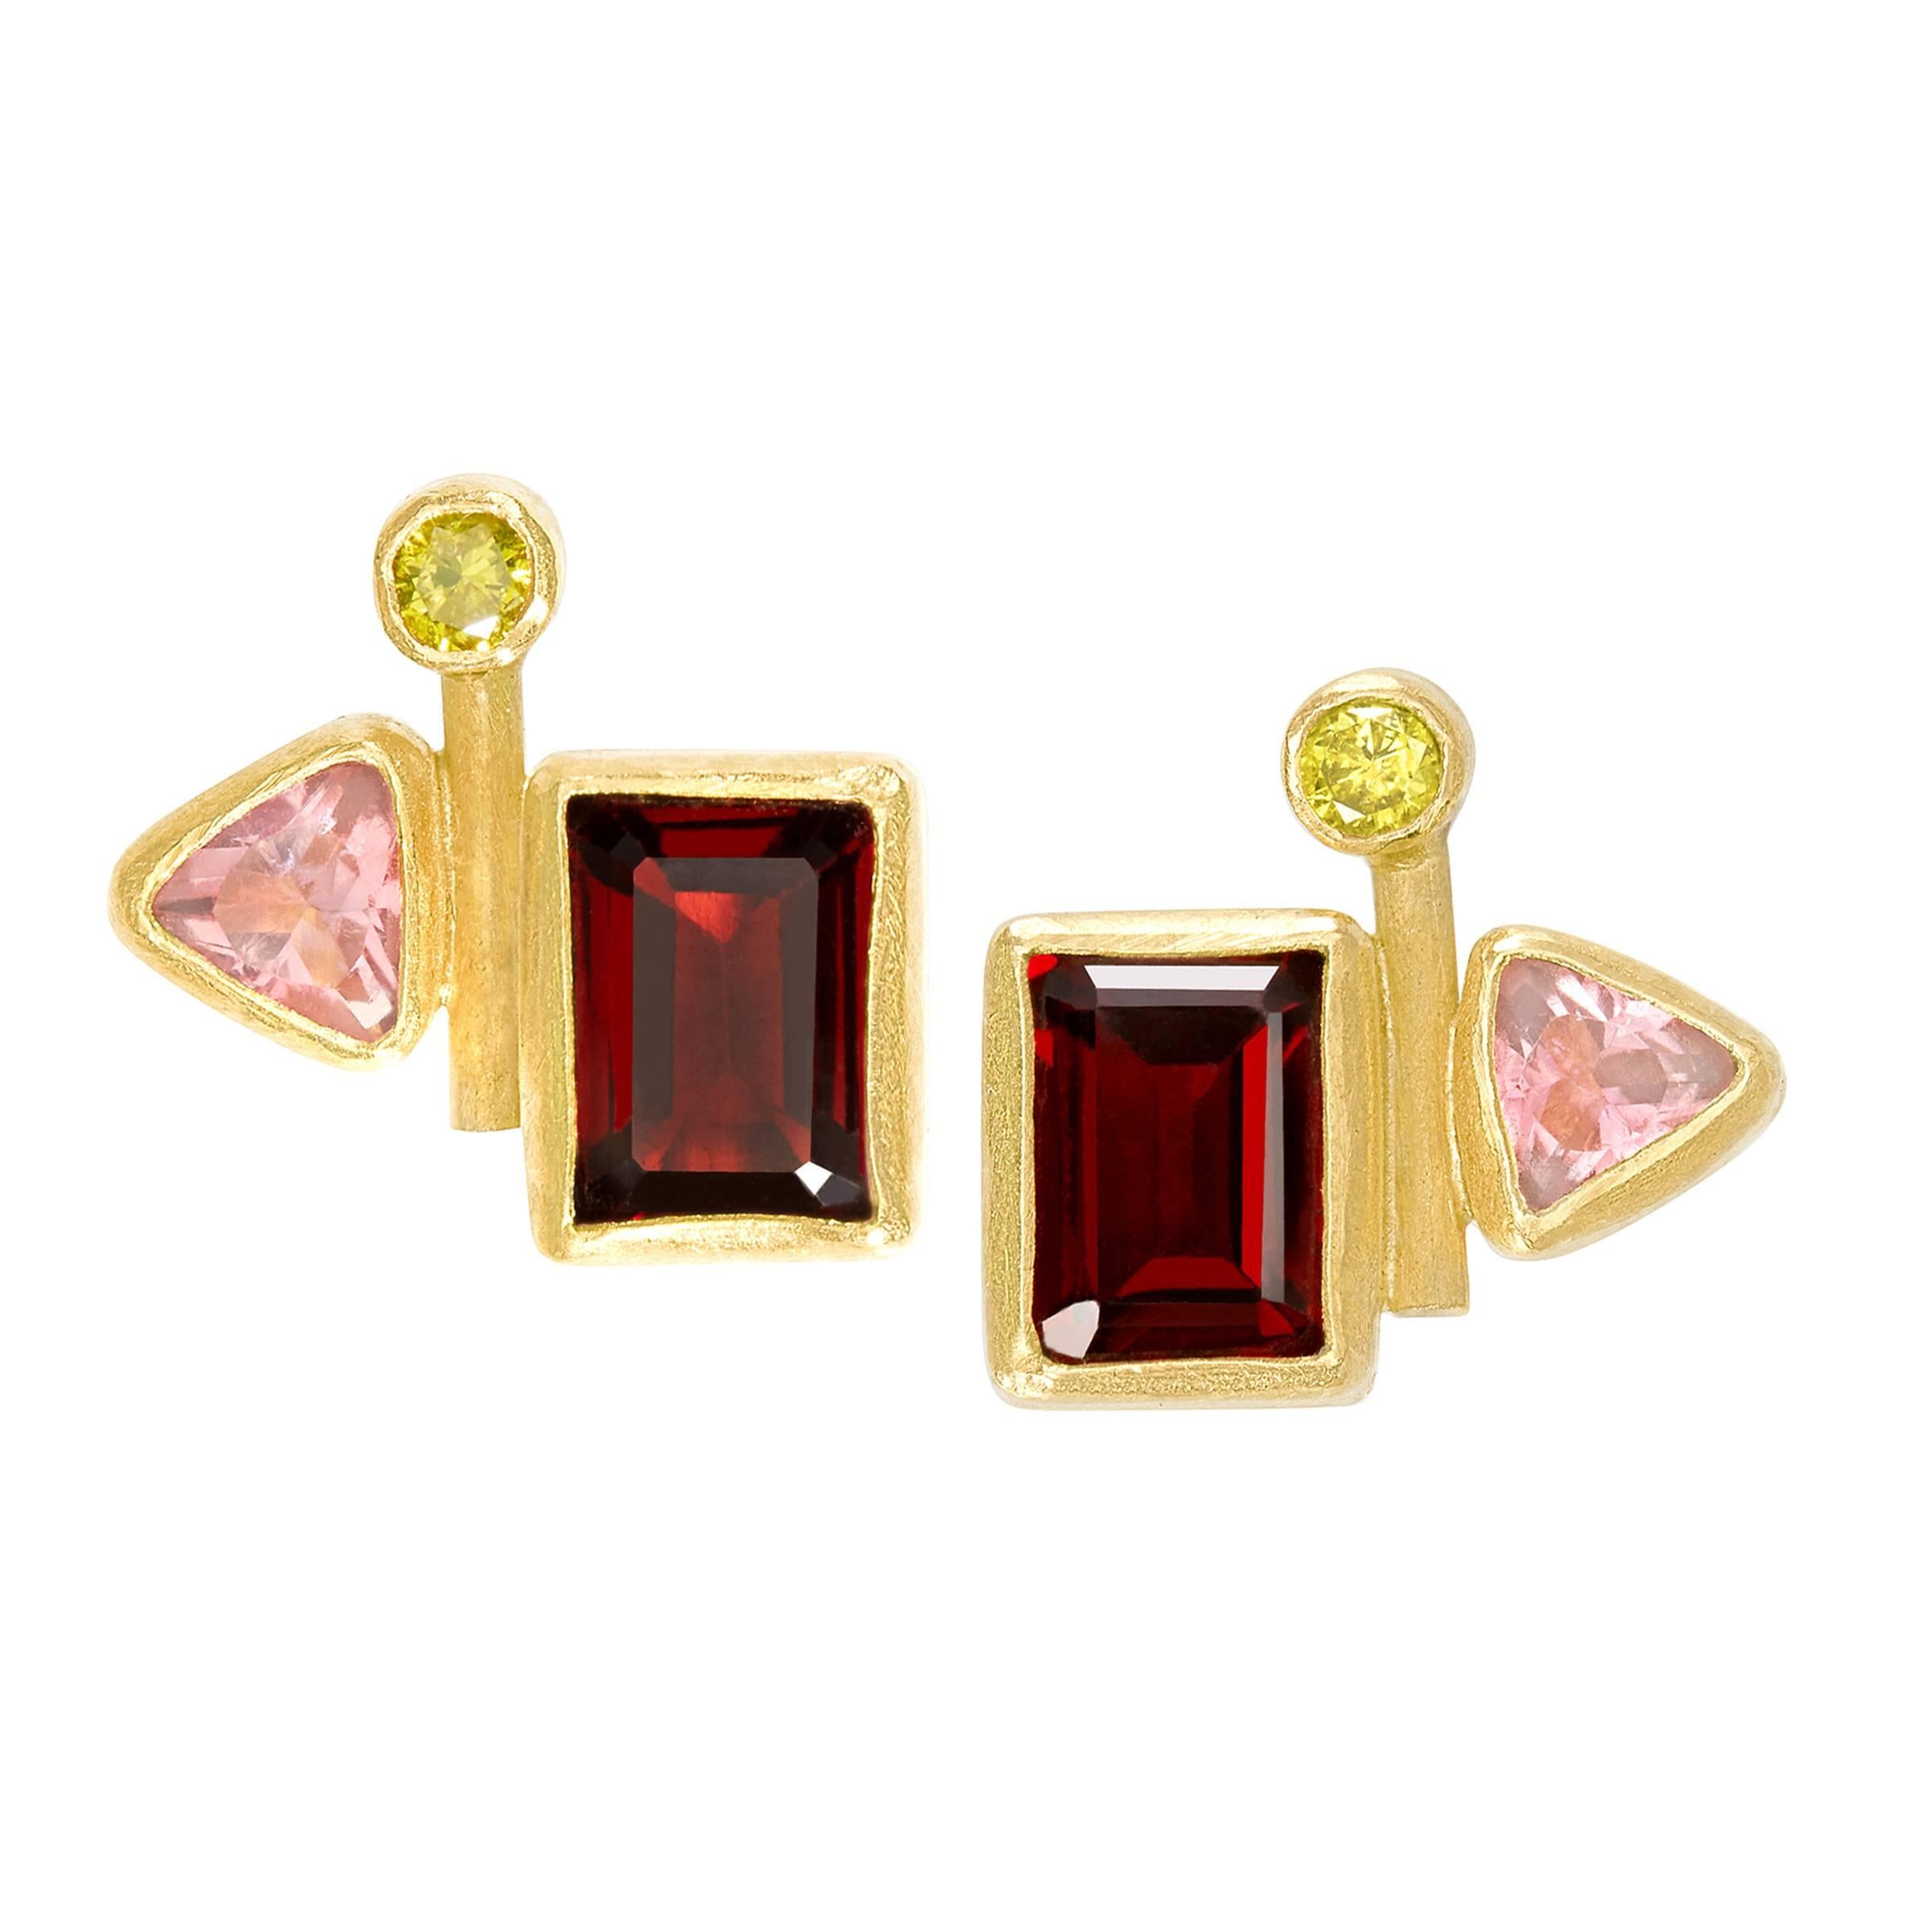 Petra Class One of a Kind Canary Diamond Pink Tourmaline Garnet Stud Earrings